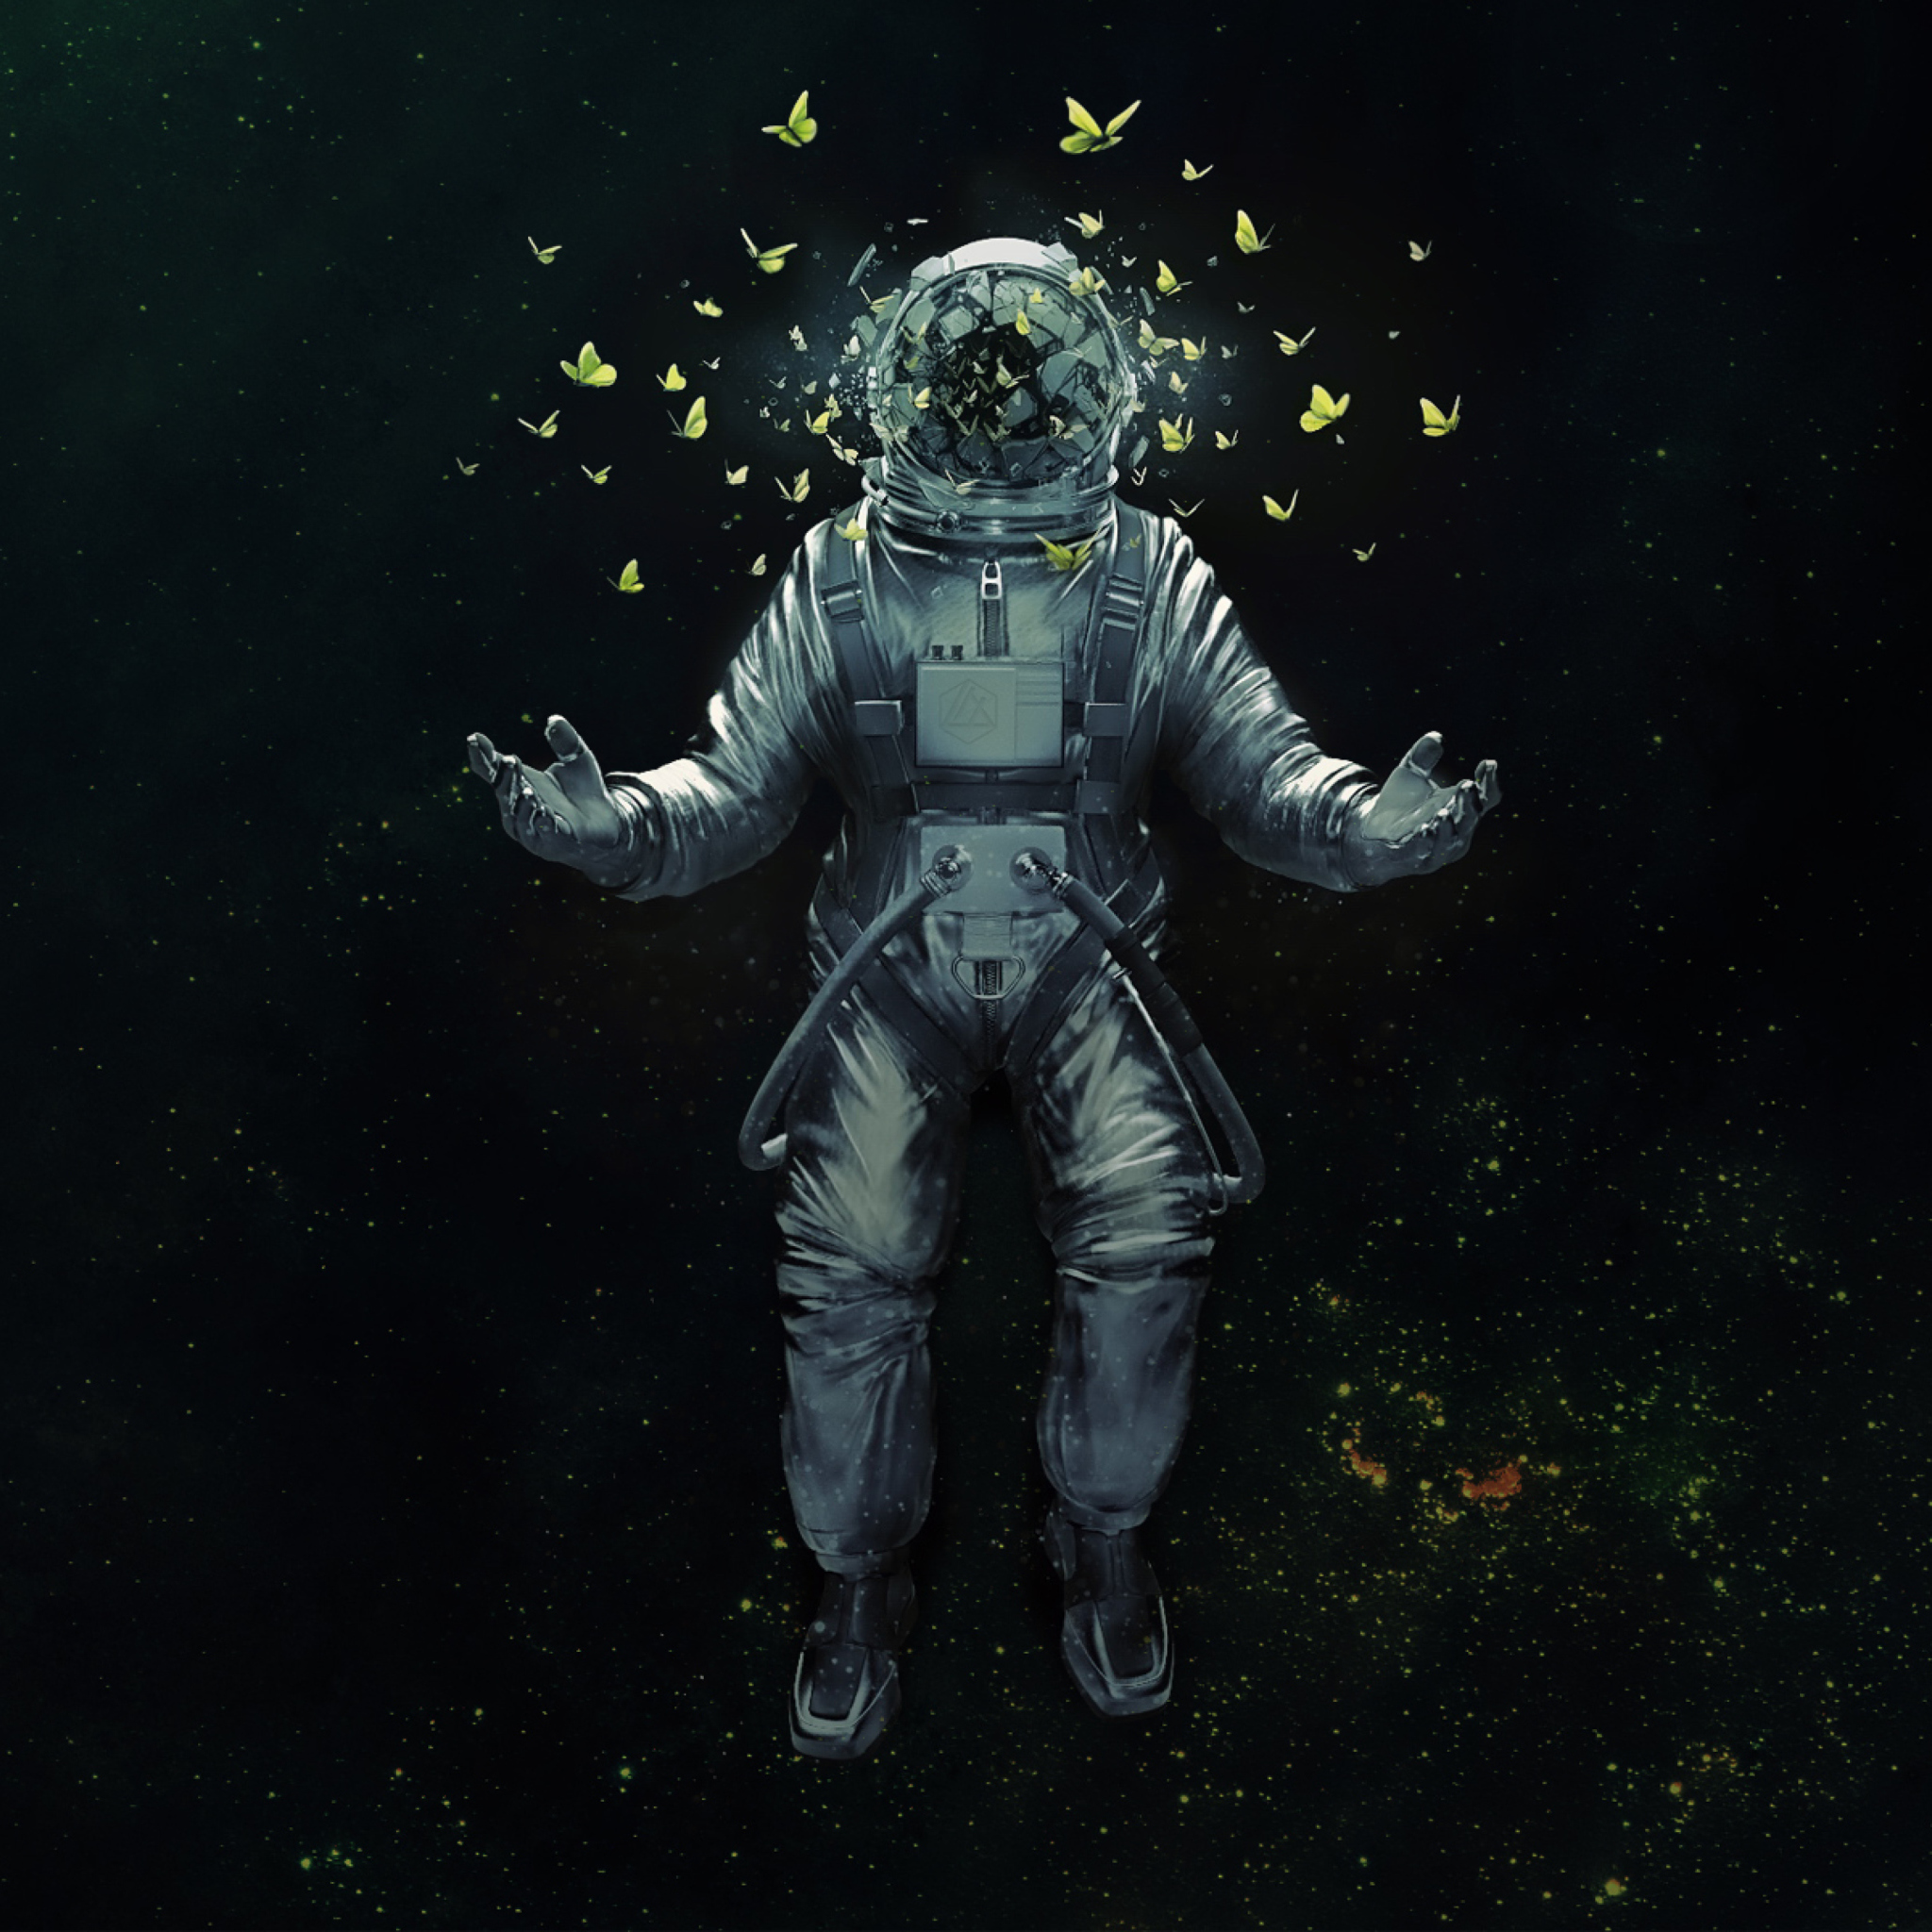 Astronaut's Dreams wallpaper 2048x2048